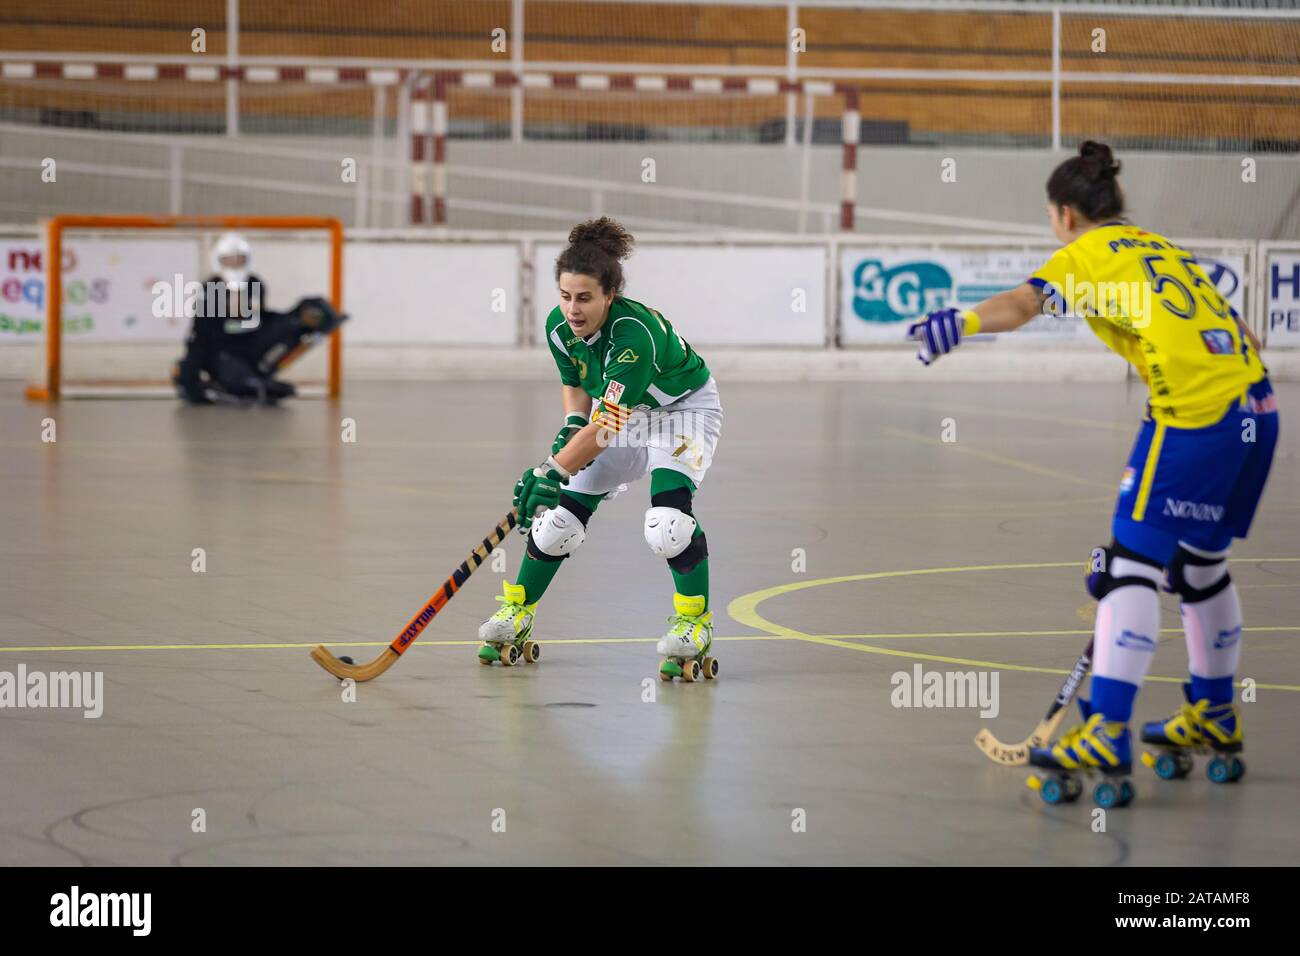 La jugadora de hockey Maria CORDOBA JUNCA en acción durante el partido.  Enfoque selectivo Fotografía de stock - Alamy